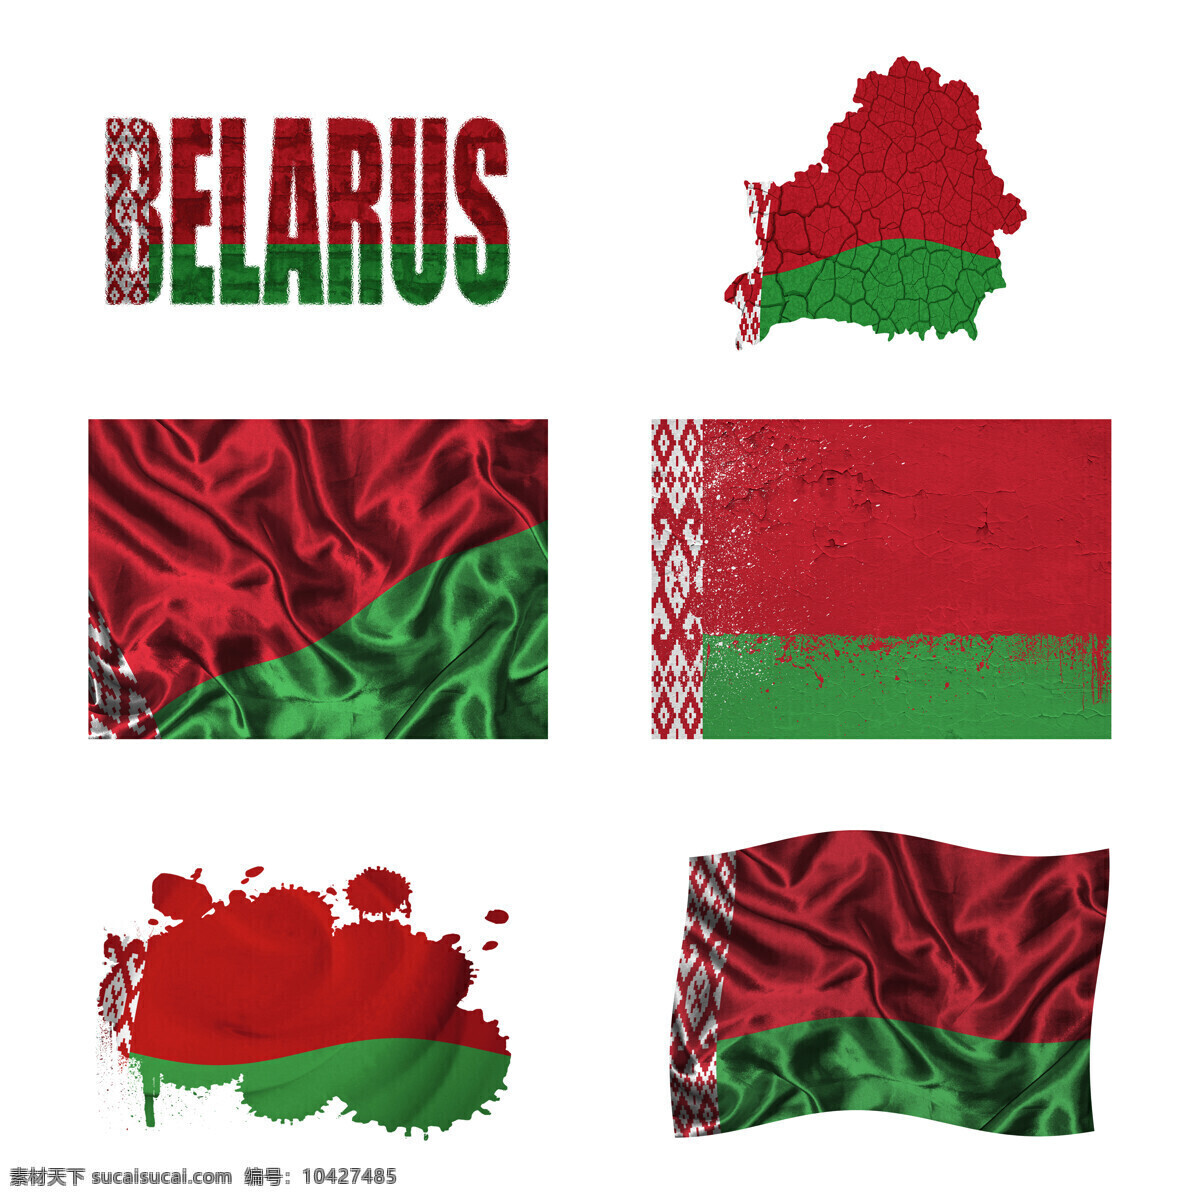 白俄罗斯 国旗 地图 白俄罗斯国旗 旗帜 国旗图案 其他类别 生活百科 白色